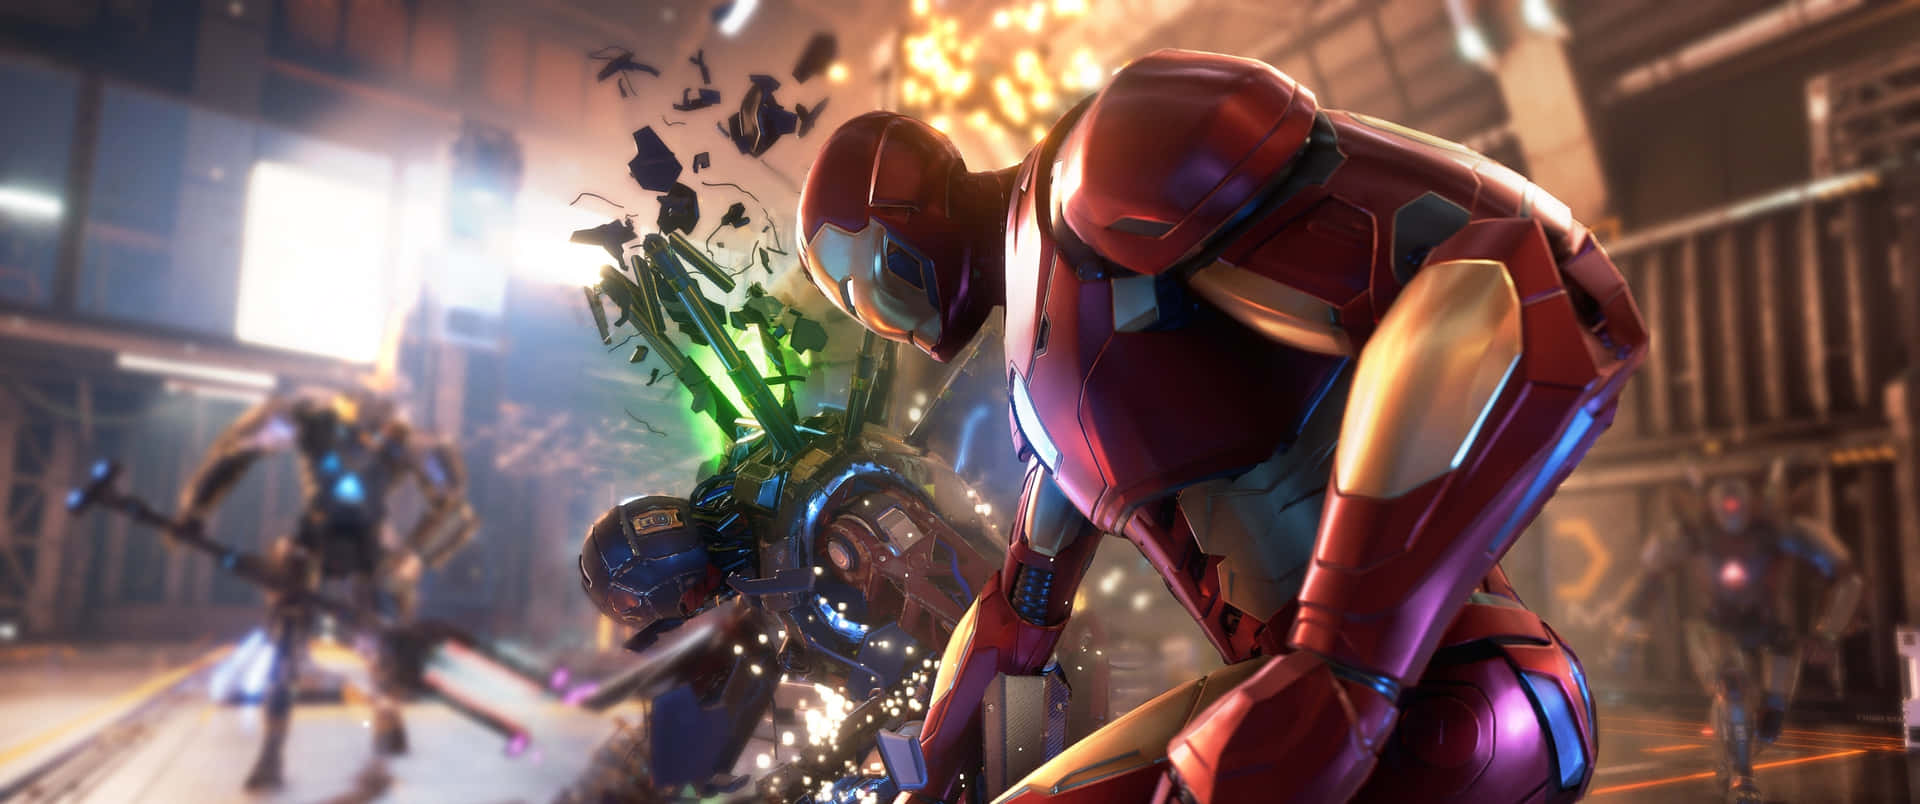 Eineszene Aus Einem Videospiel Mit Iron Man Und Anderen Charakteren